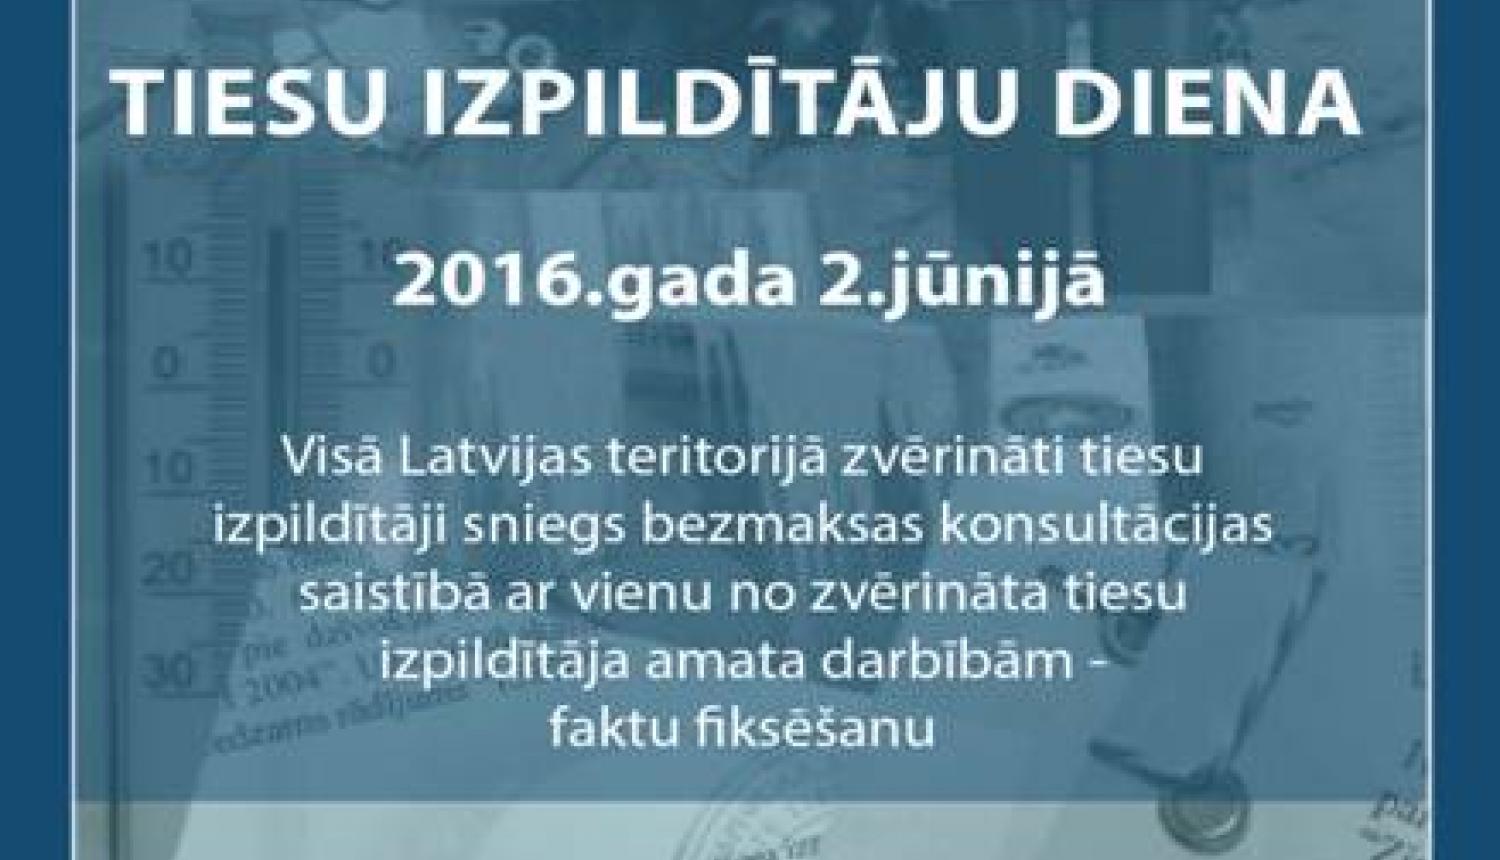 Latvijā pirmo reizi notiks Tiesu izpildītāju diena